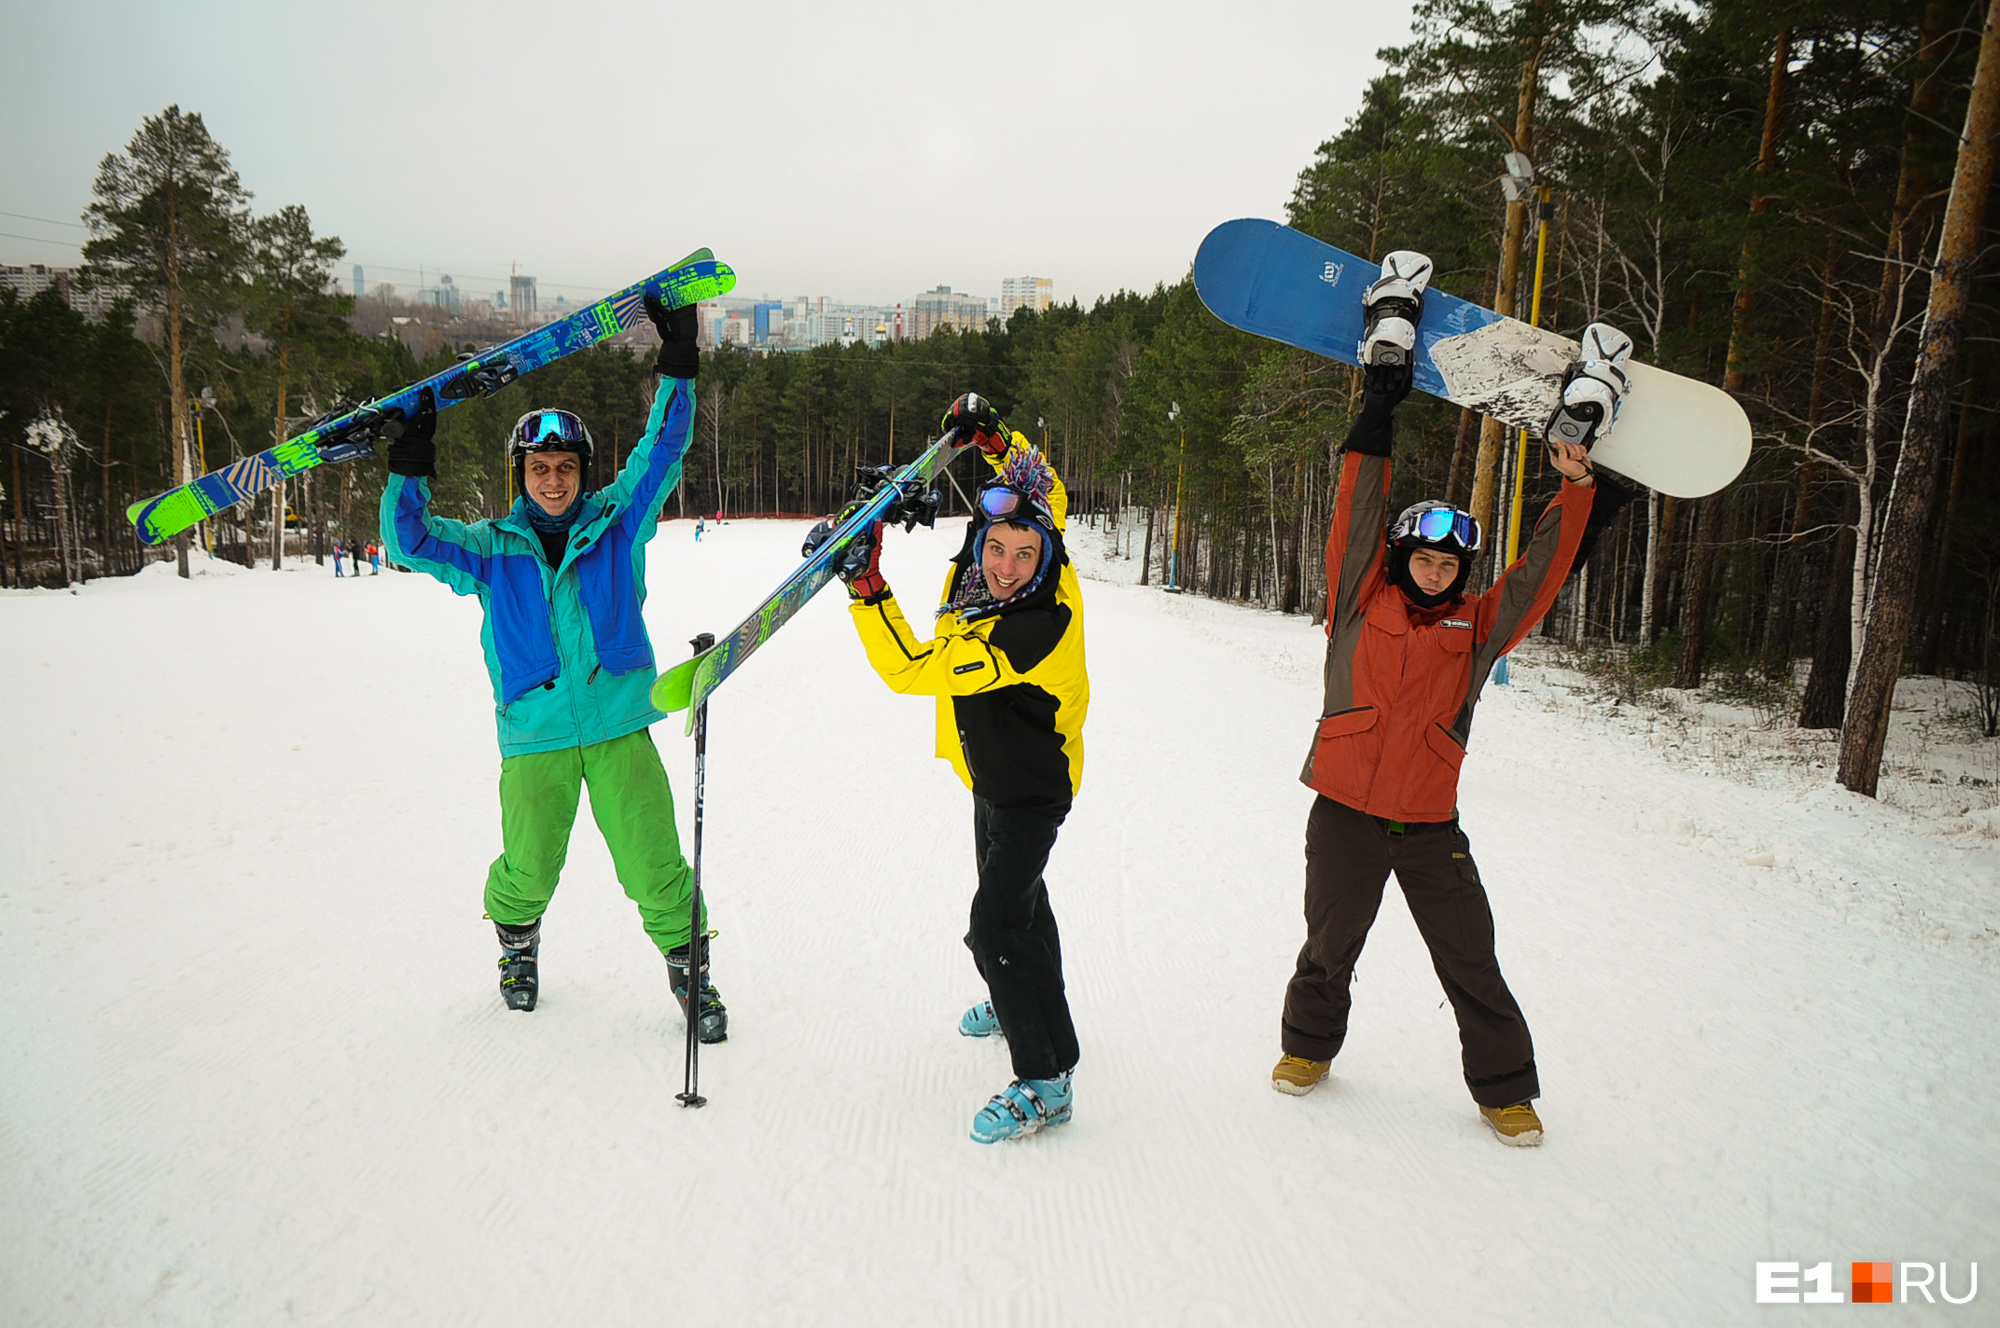 Открытие горнолыжного сезона, уральский Октоберфест и гонки на картах: 28 идей для выходных в Екатеринбурге